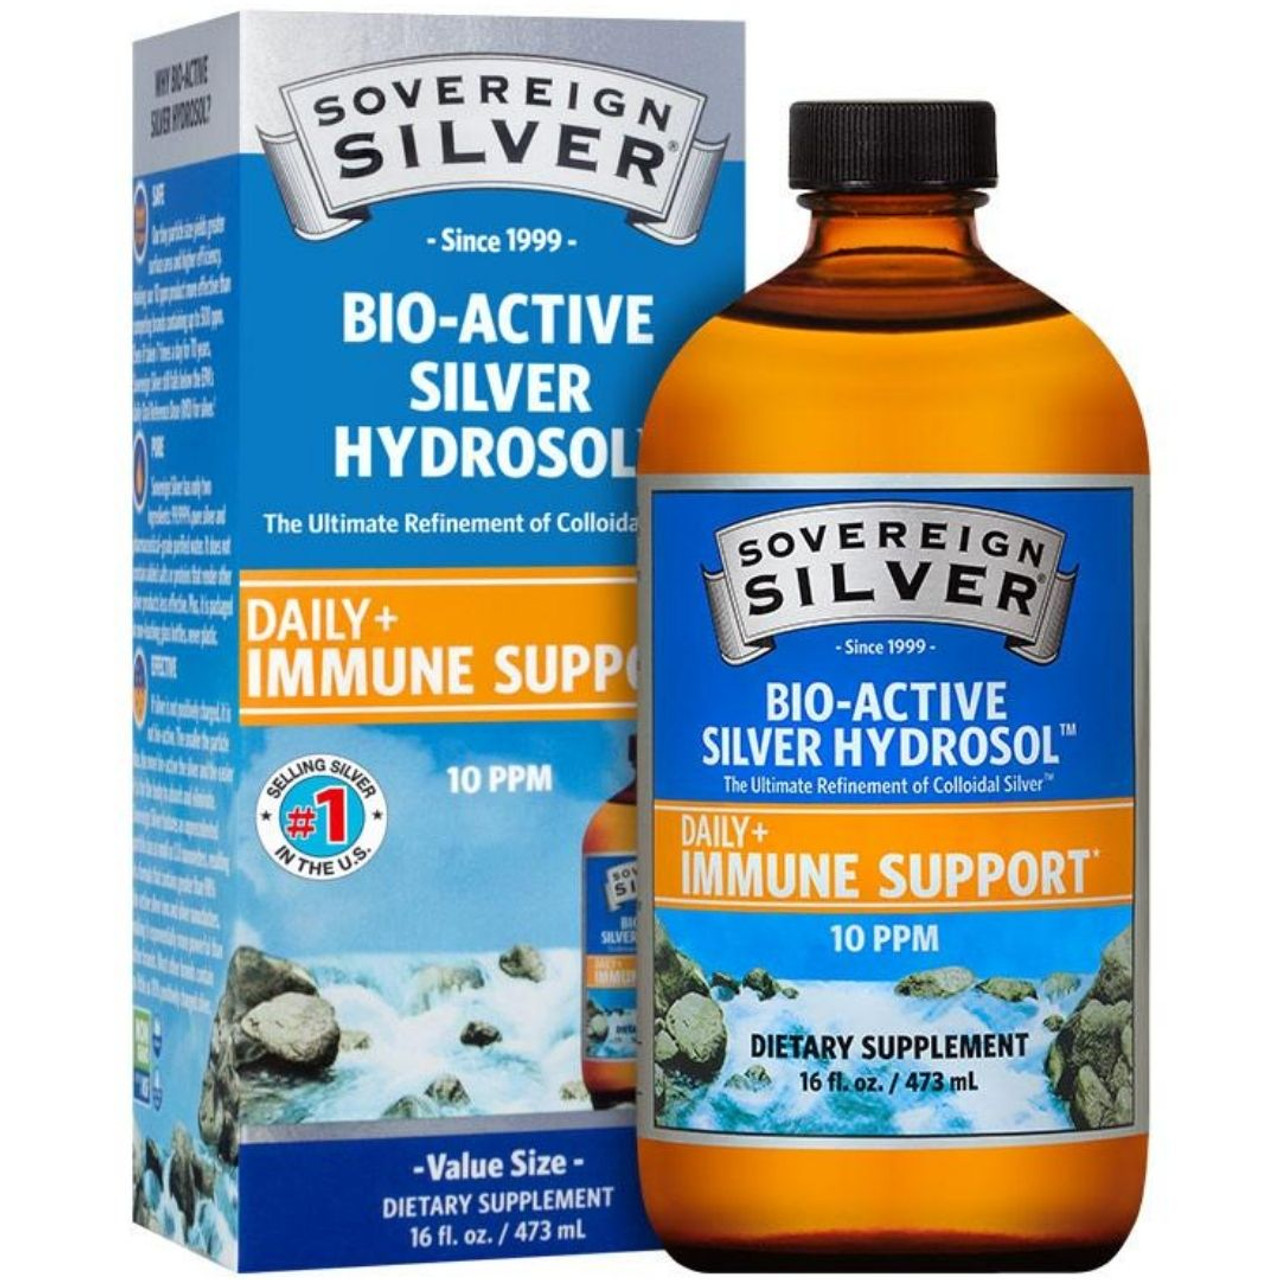 Source Naturals Wellness Colloidal Silver™, 30 ppm - 4 fl oz - Kroger